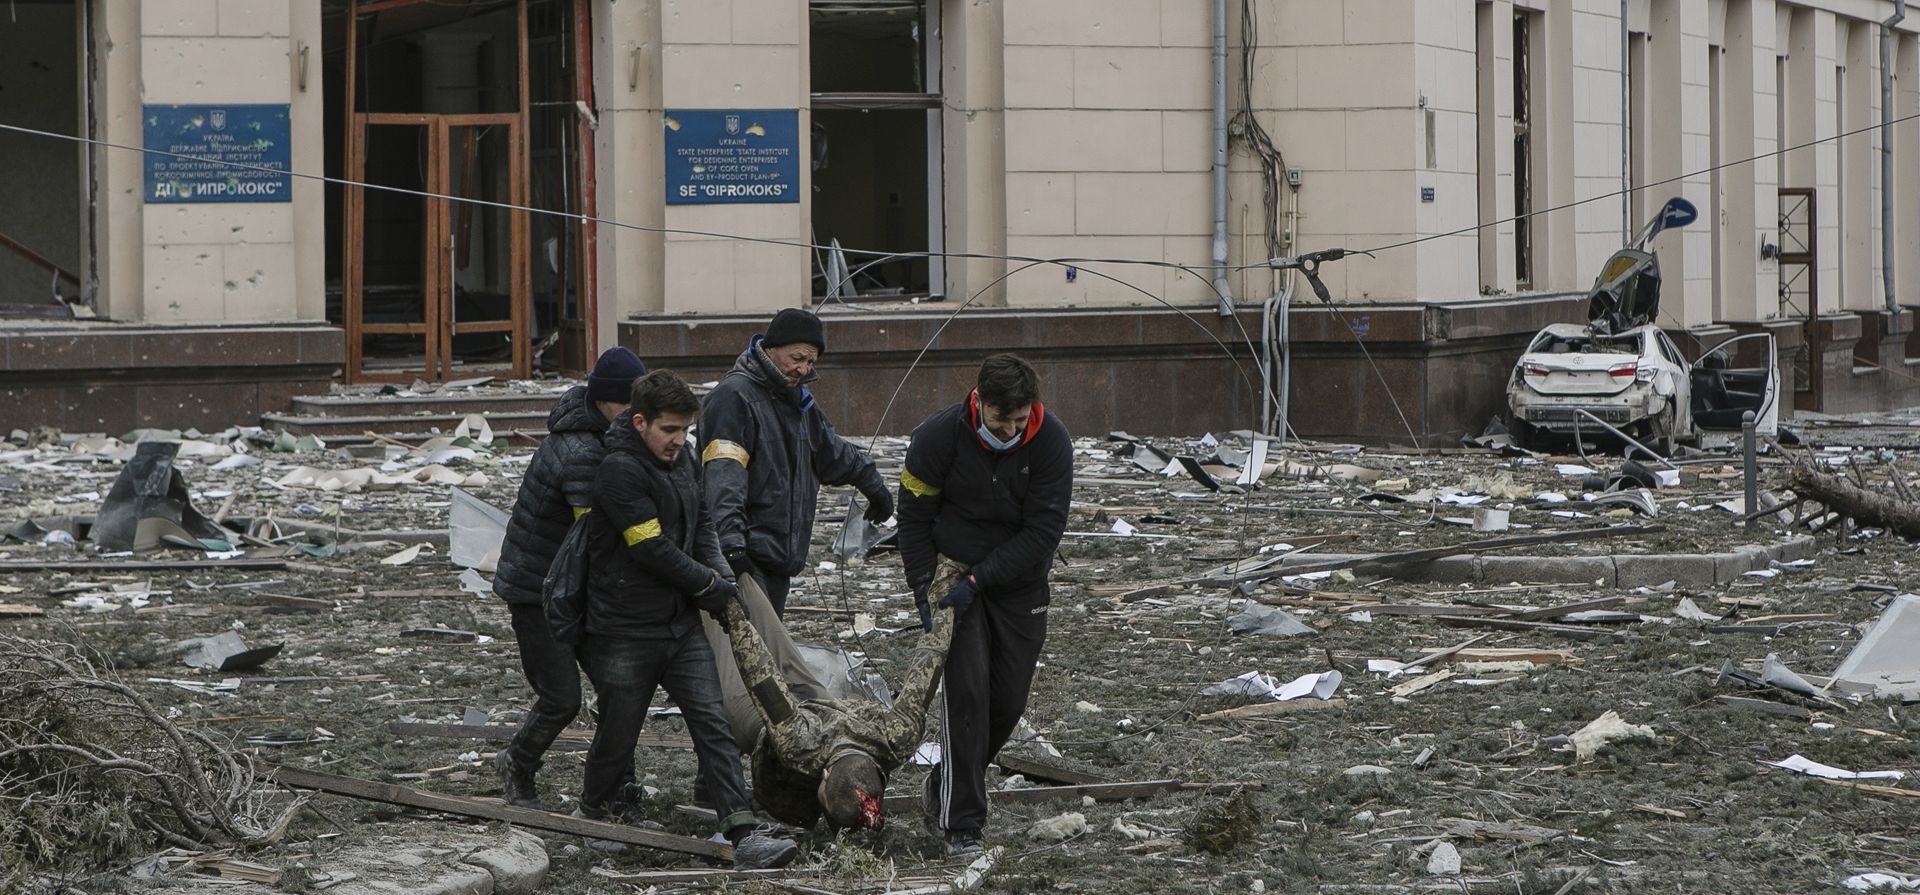 Voluntarios ucranianos sacan a una víctima del edificio del ayuntamiento, luego del bombardeo en Kharkiv, Ucrania, el martes 1 de marzo de 2022. Rusia intensificó el martes los bombardeos en Kharkiv, la segunda ciudad más grande de Ucrania, atacando objetivos civiles allí. Las bajas aumentaron y surgieron informes de que más de 70 soldados ucranianos murieron después de que la artillería rusa atacara recientemente una base militar en Okhtyrka, una ciudad entre Kharkiv y Kyiv, la capital.